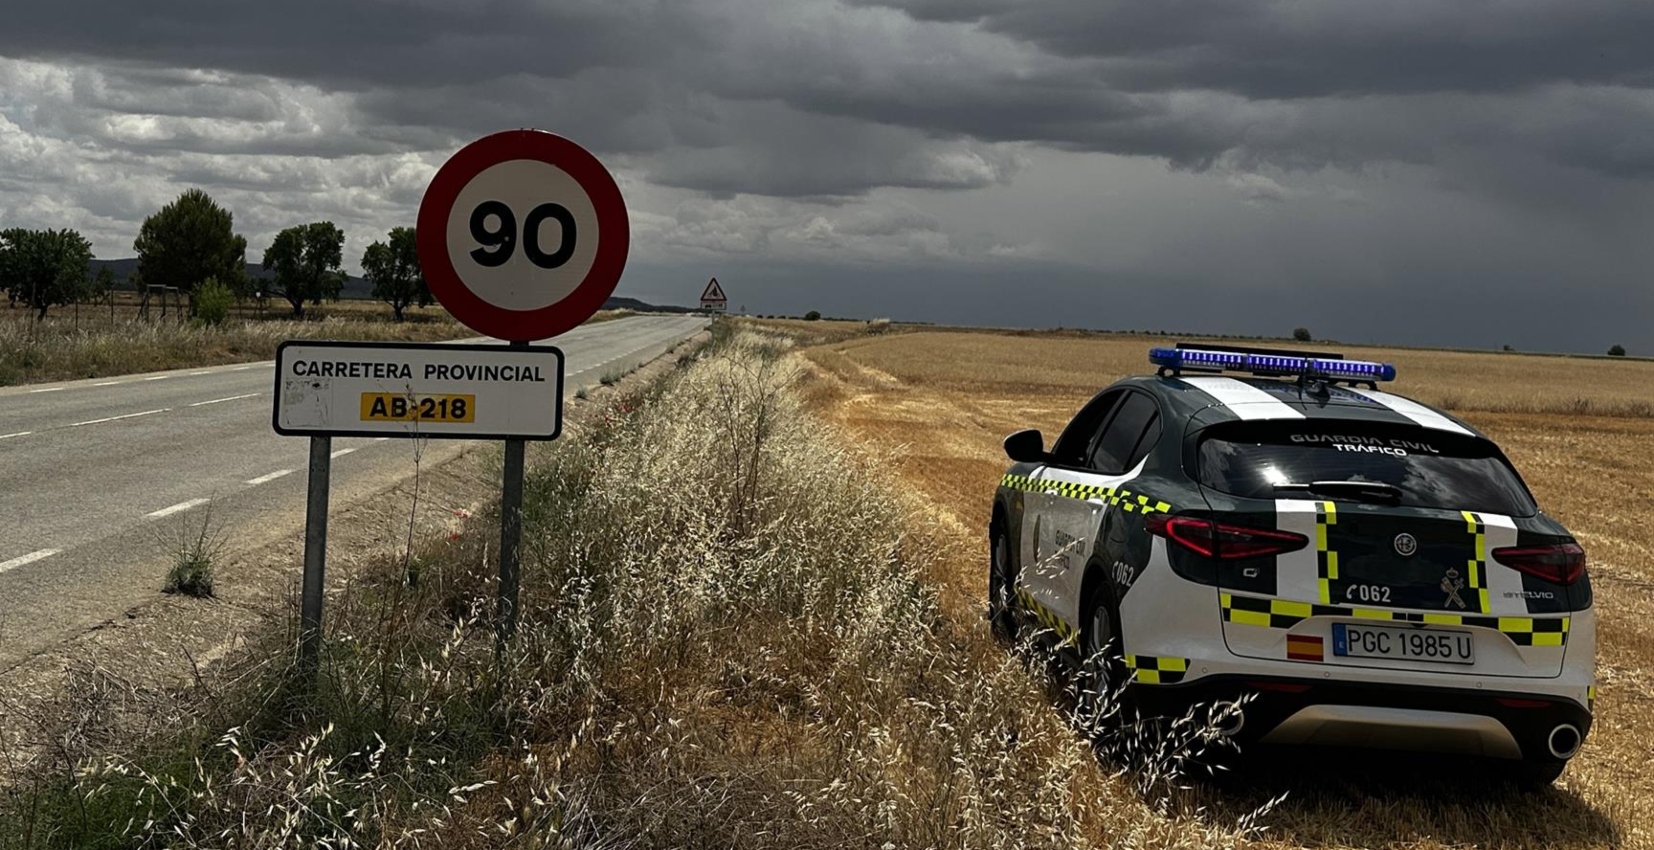 La Guardia Civil de Albacete investiga al conductor de un turismo por un delito contra la seguridad vial al circular con exceso de velocidad.